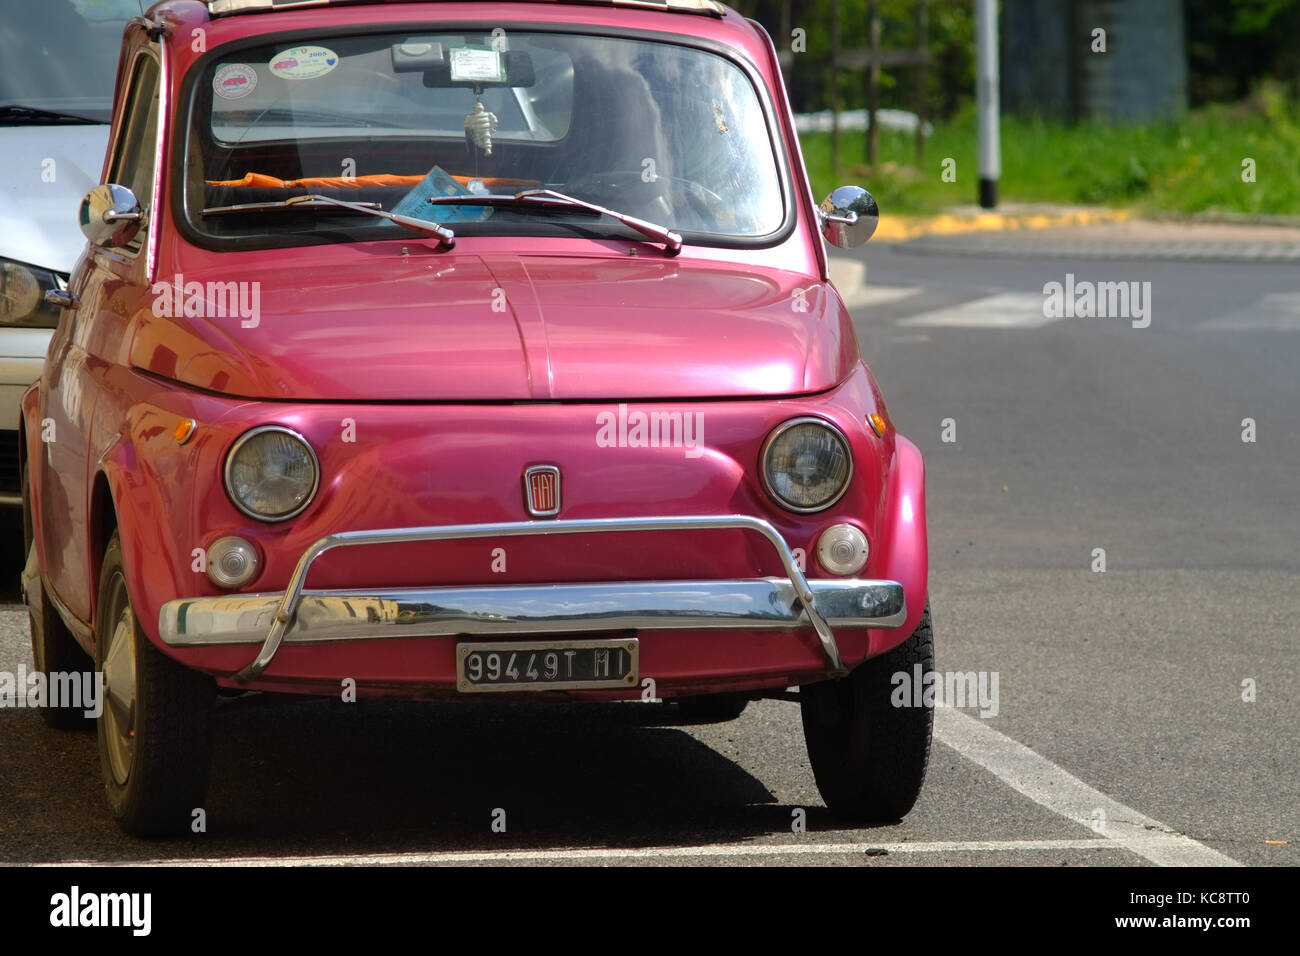 Pink Fiat 500 garée dans la rue. Modèle Classic vintage. Florence, Italie Banque D'Images